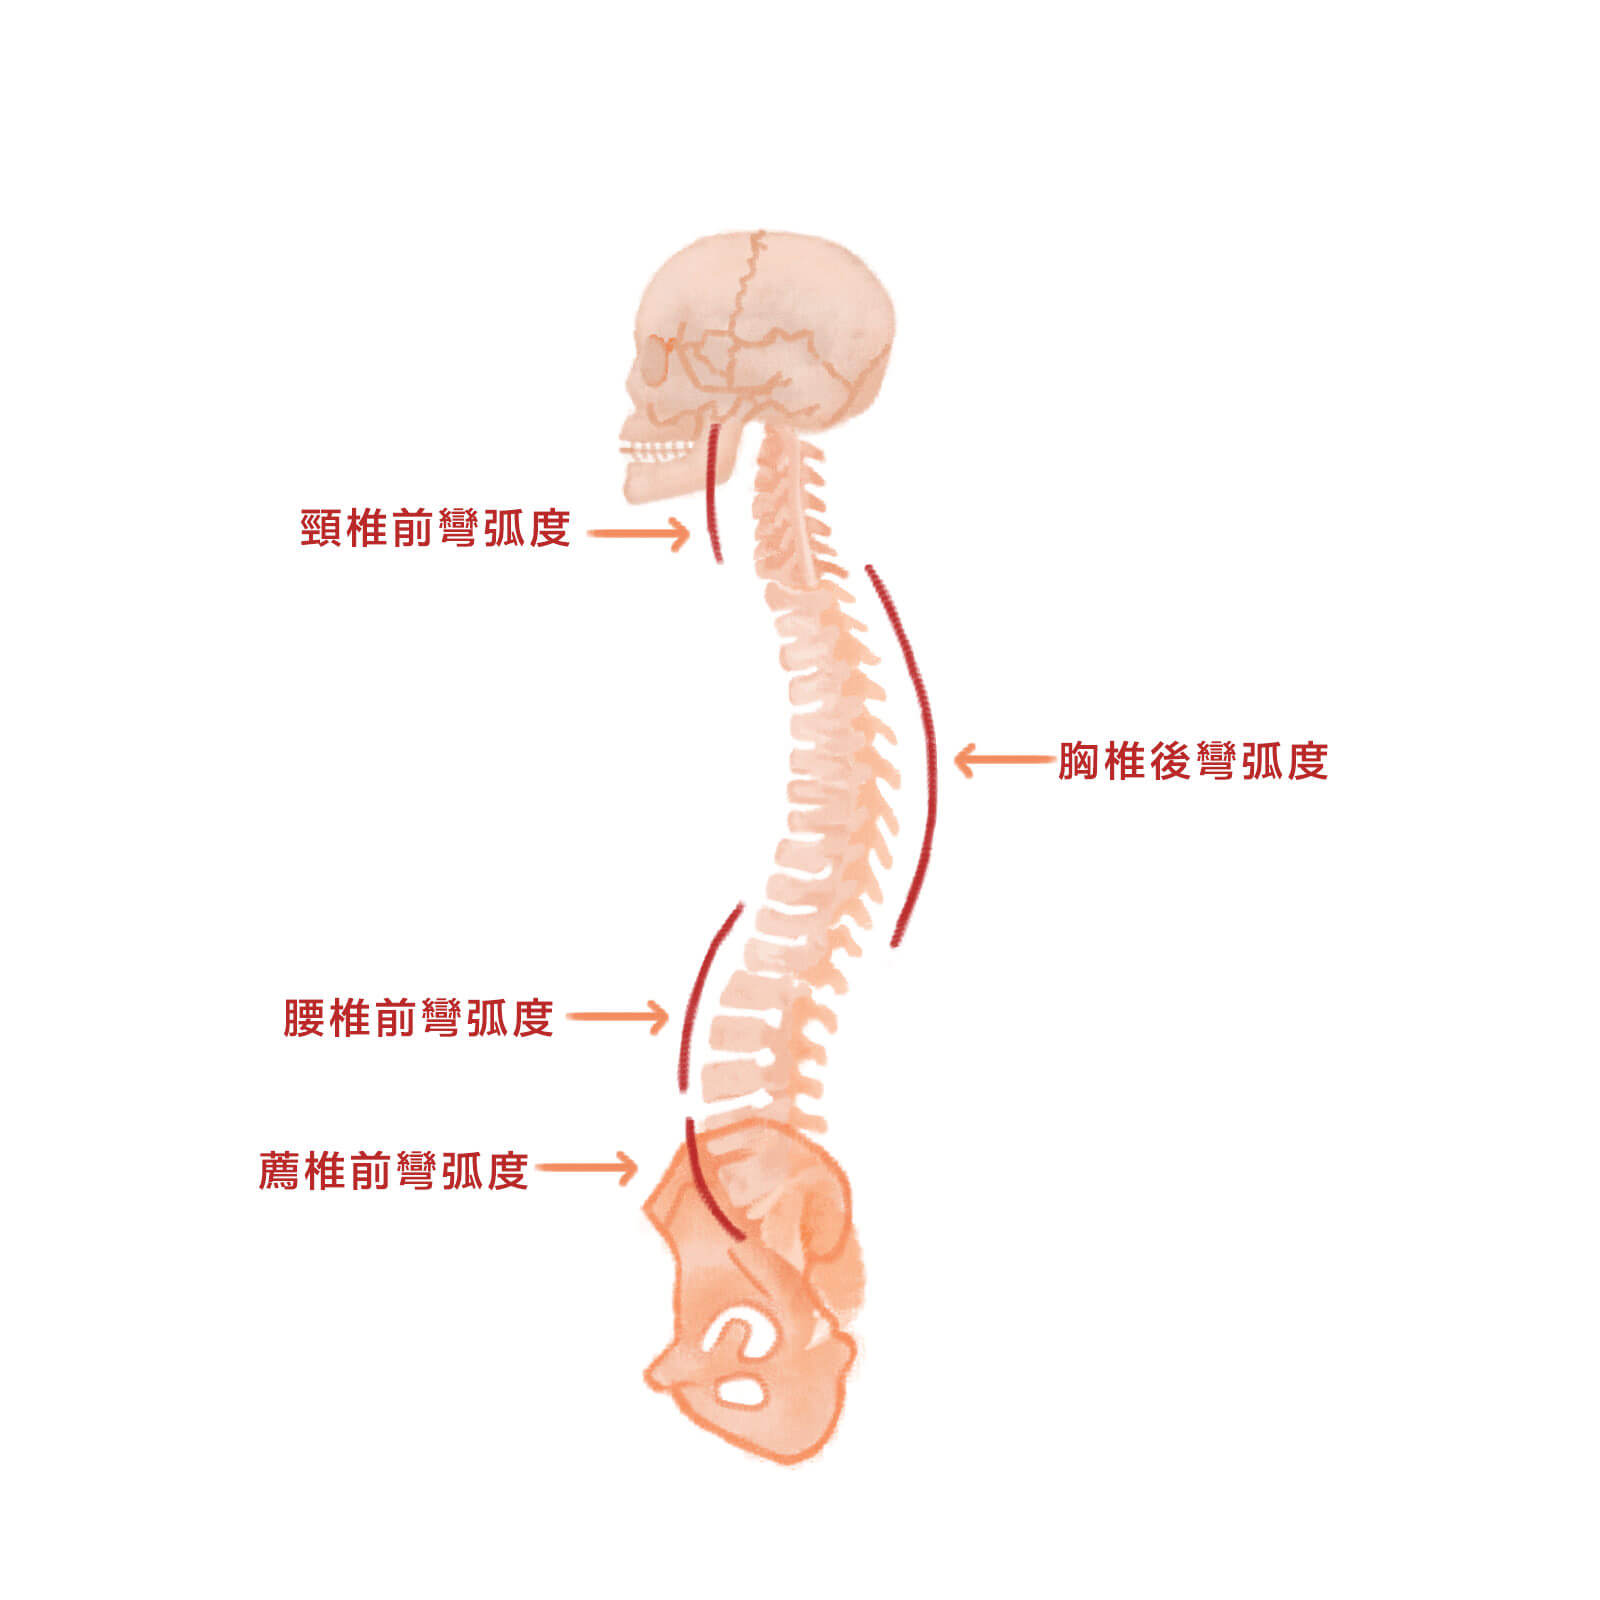 1-脊椎基本活動與力學